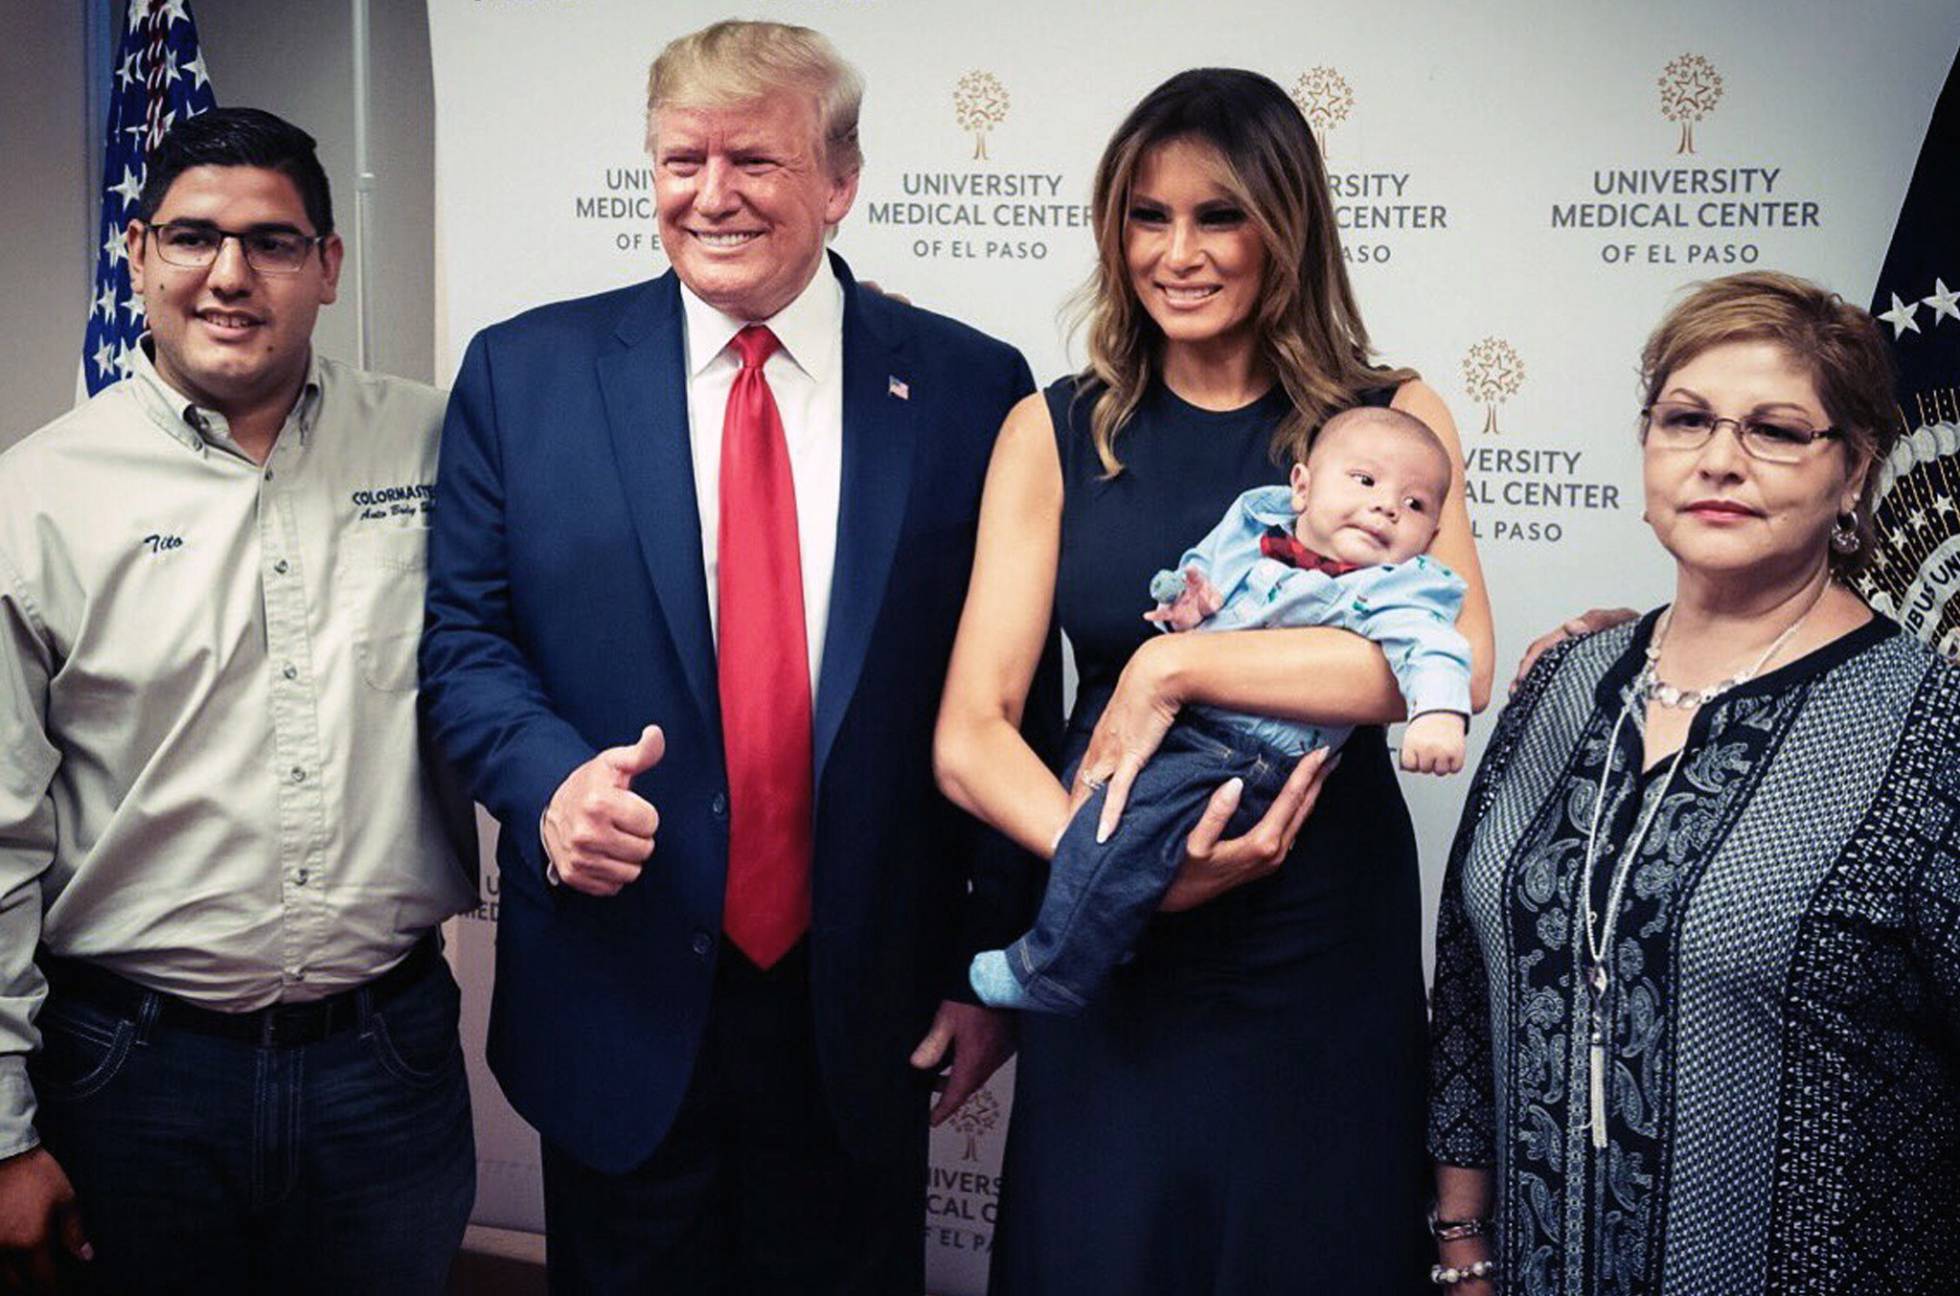 Una fotografía de Trump con un pulgar hacia arriba y un bebé huérfano en El Paso desata polémica